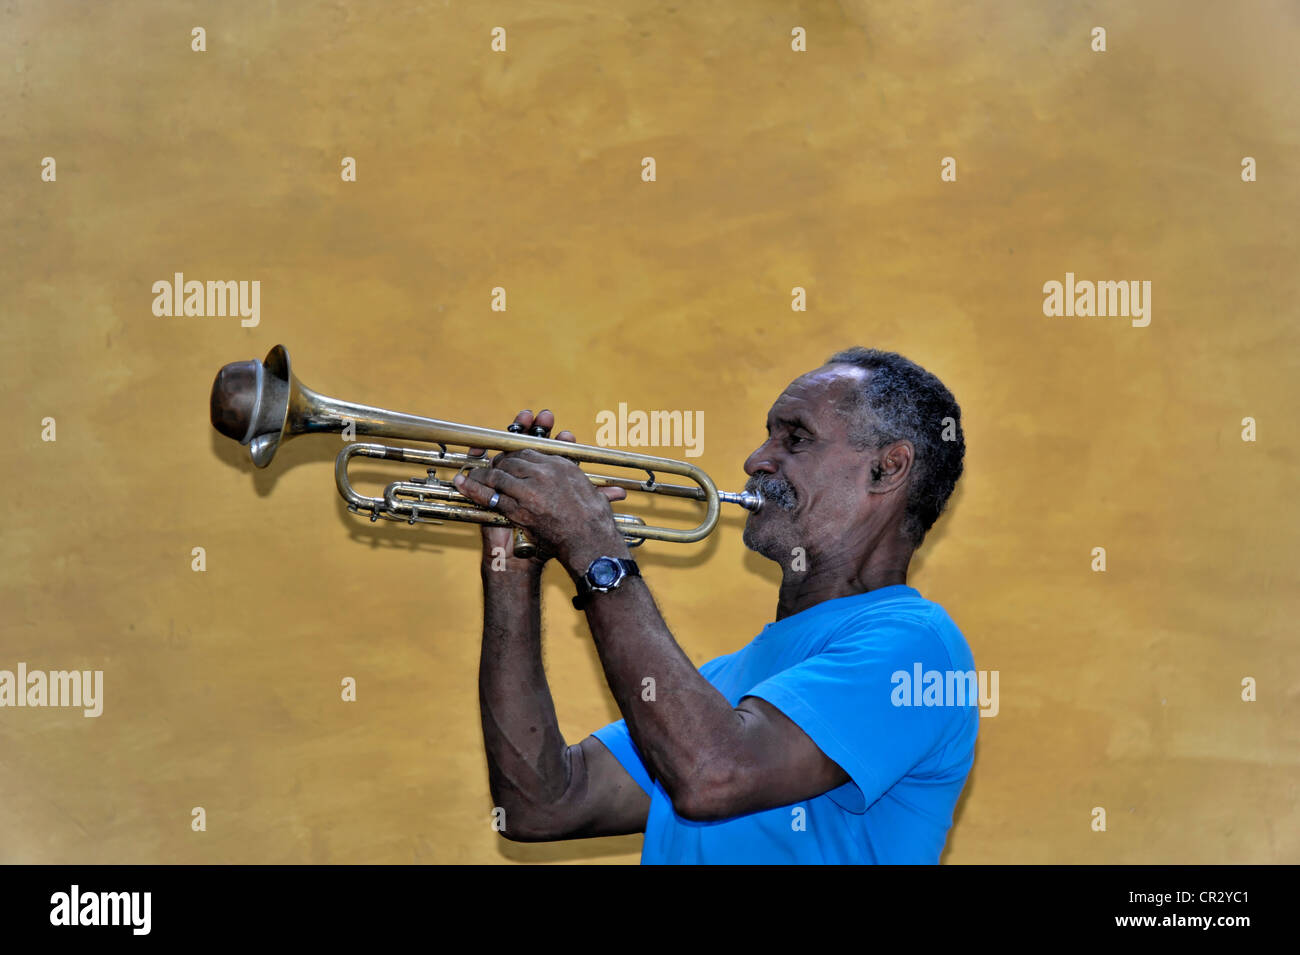 Musicien cubain à jouer de la trompette, trompettiste, portrait, Trinidad, Cuba, Antilles, Caraïbes, Amérique Centrale, Amérique Latine Banque D'Images